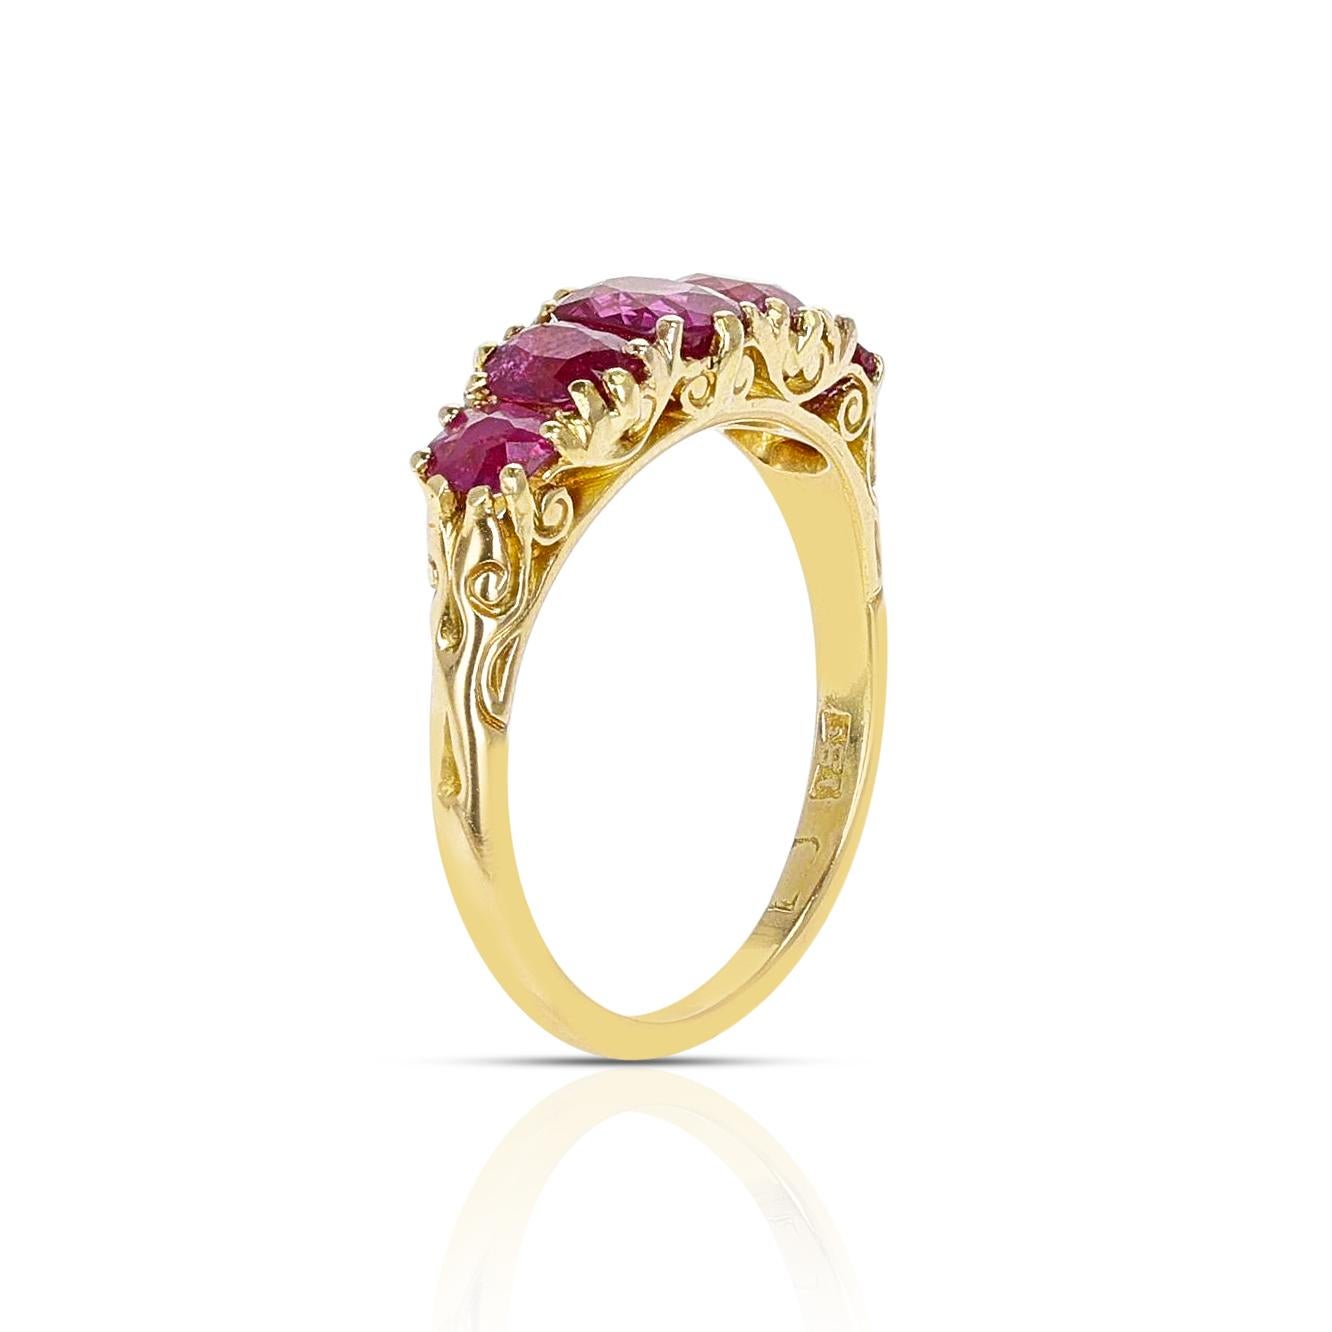 Magnifique bague victorienne en or jaune 18 carats, ornée de cinq rubis ovales et ronds. La taille de l'anneau est de 8,25 US. 